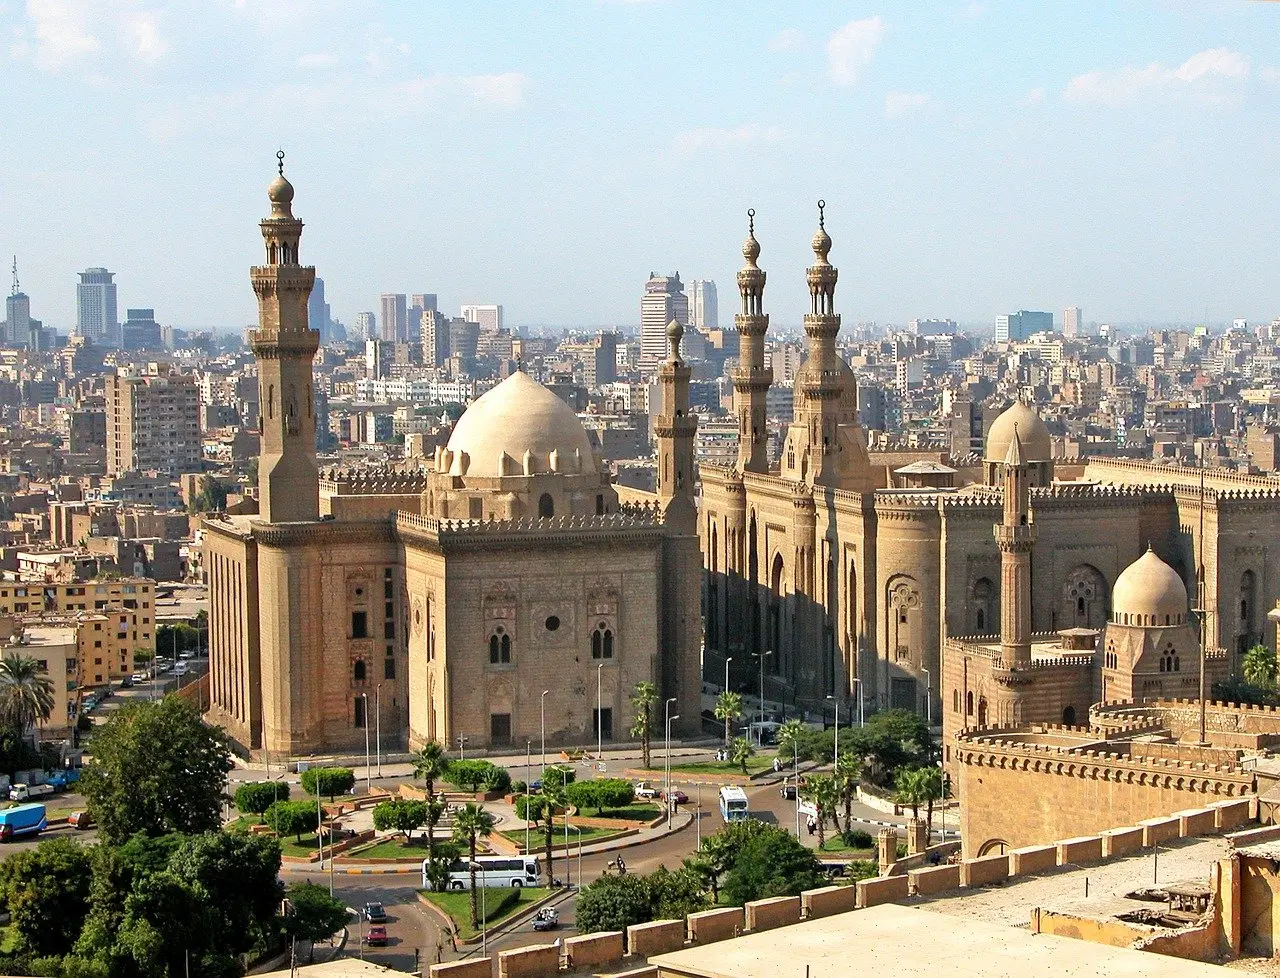 Ven a descubrir Egipto en un increíble viaje en grupo. Recorreremos el Nilo en busca de grandes historias en Luxor, Abu Simbel, El Cairo y las Piramides.